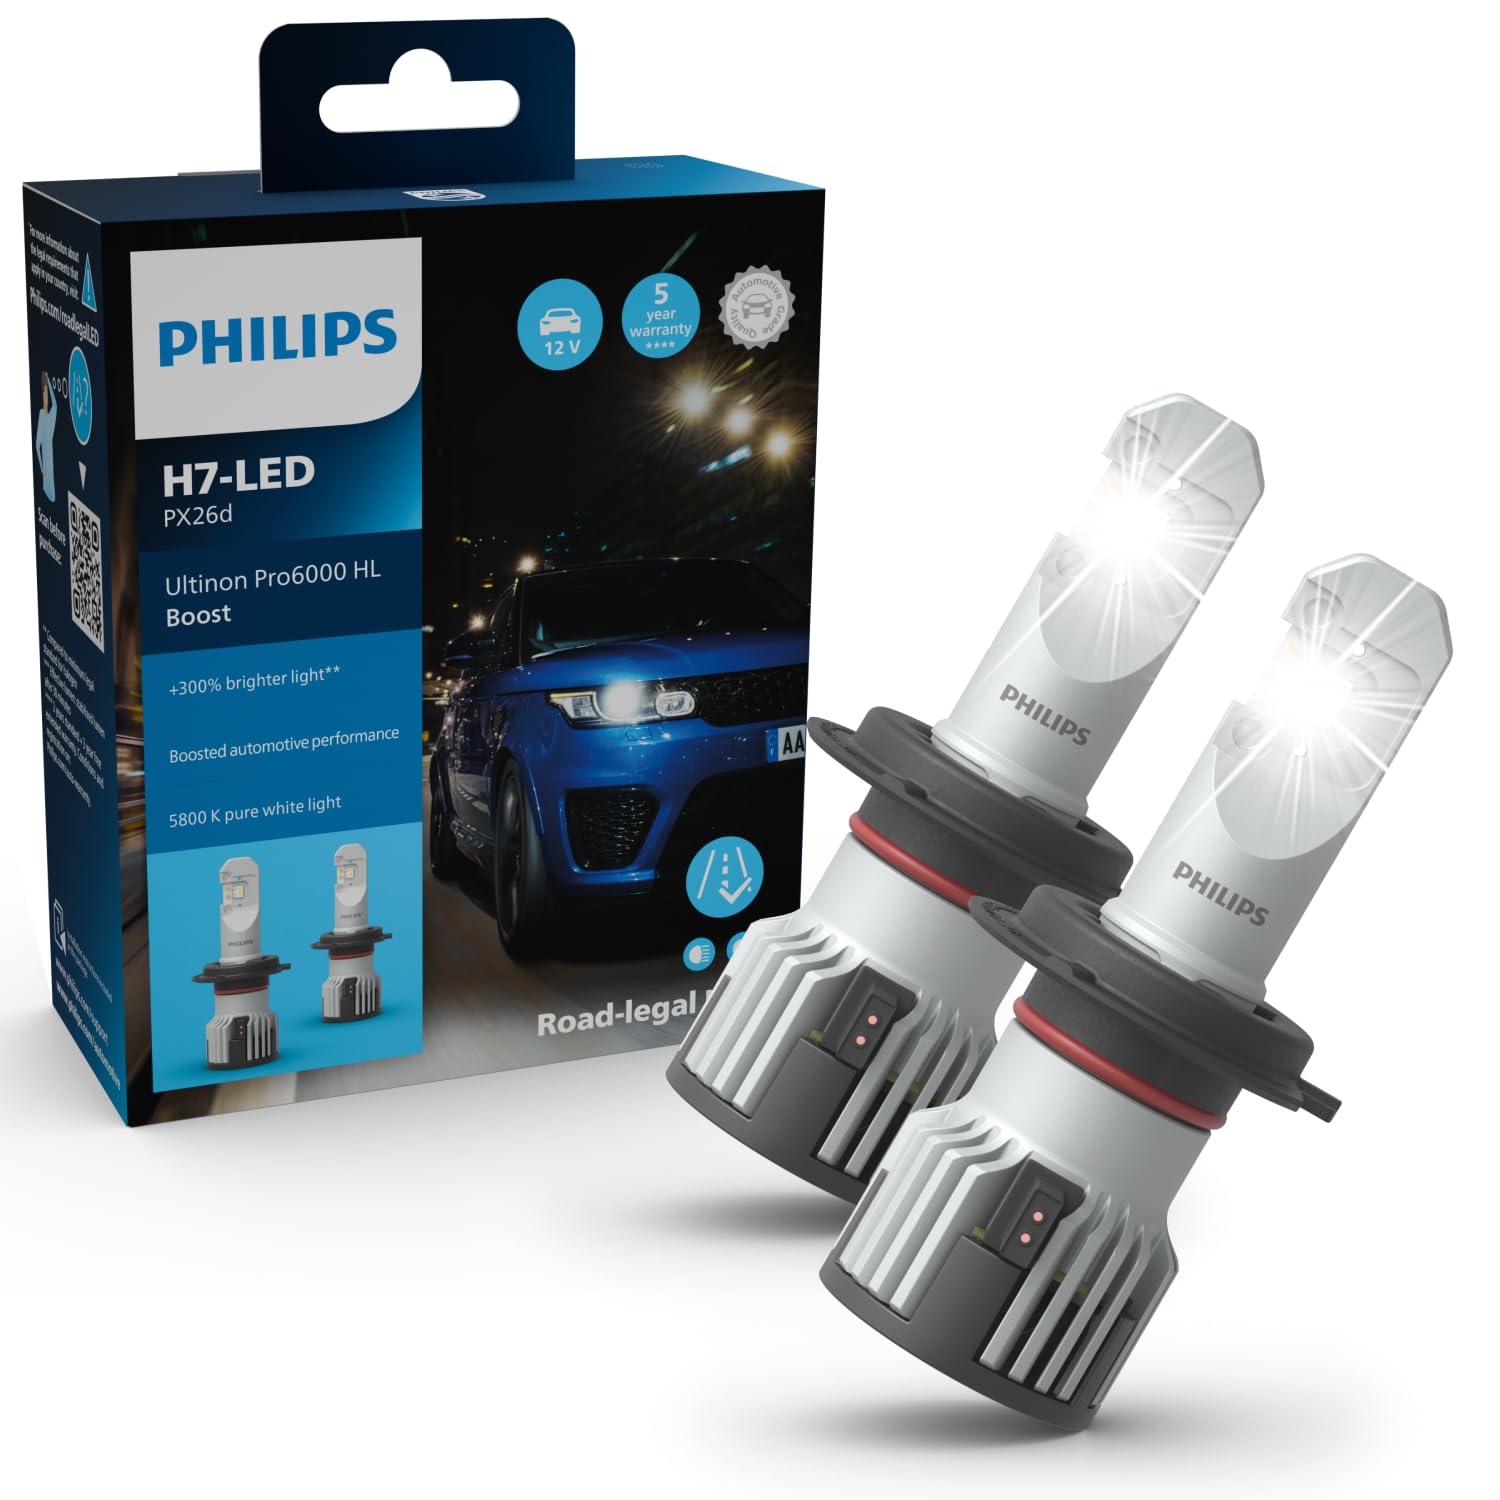 Philips Ultinon Pro6000 Boost H7-LED Scheinwerferlampe mit Straßenzulassung*, 300% helleres Licht** von Philips automotive lighting